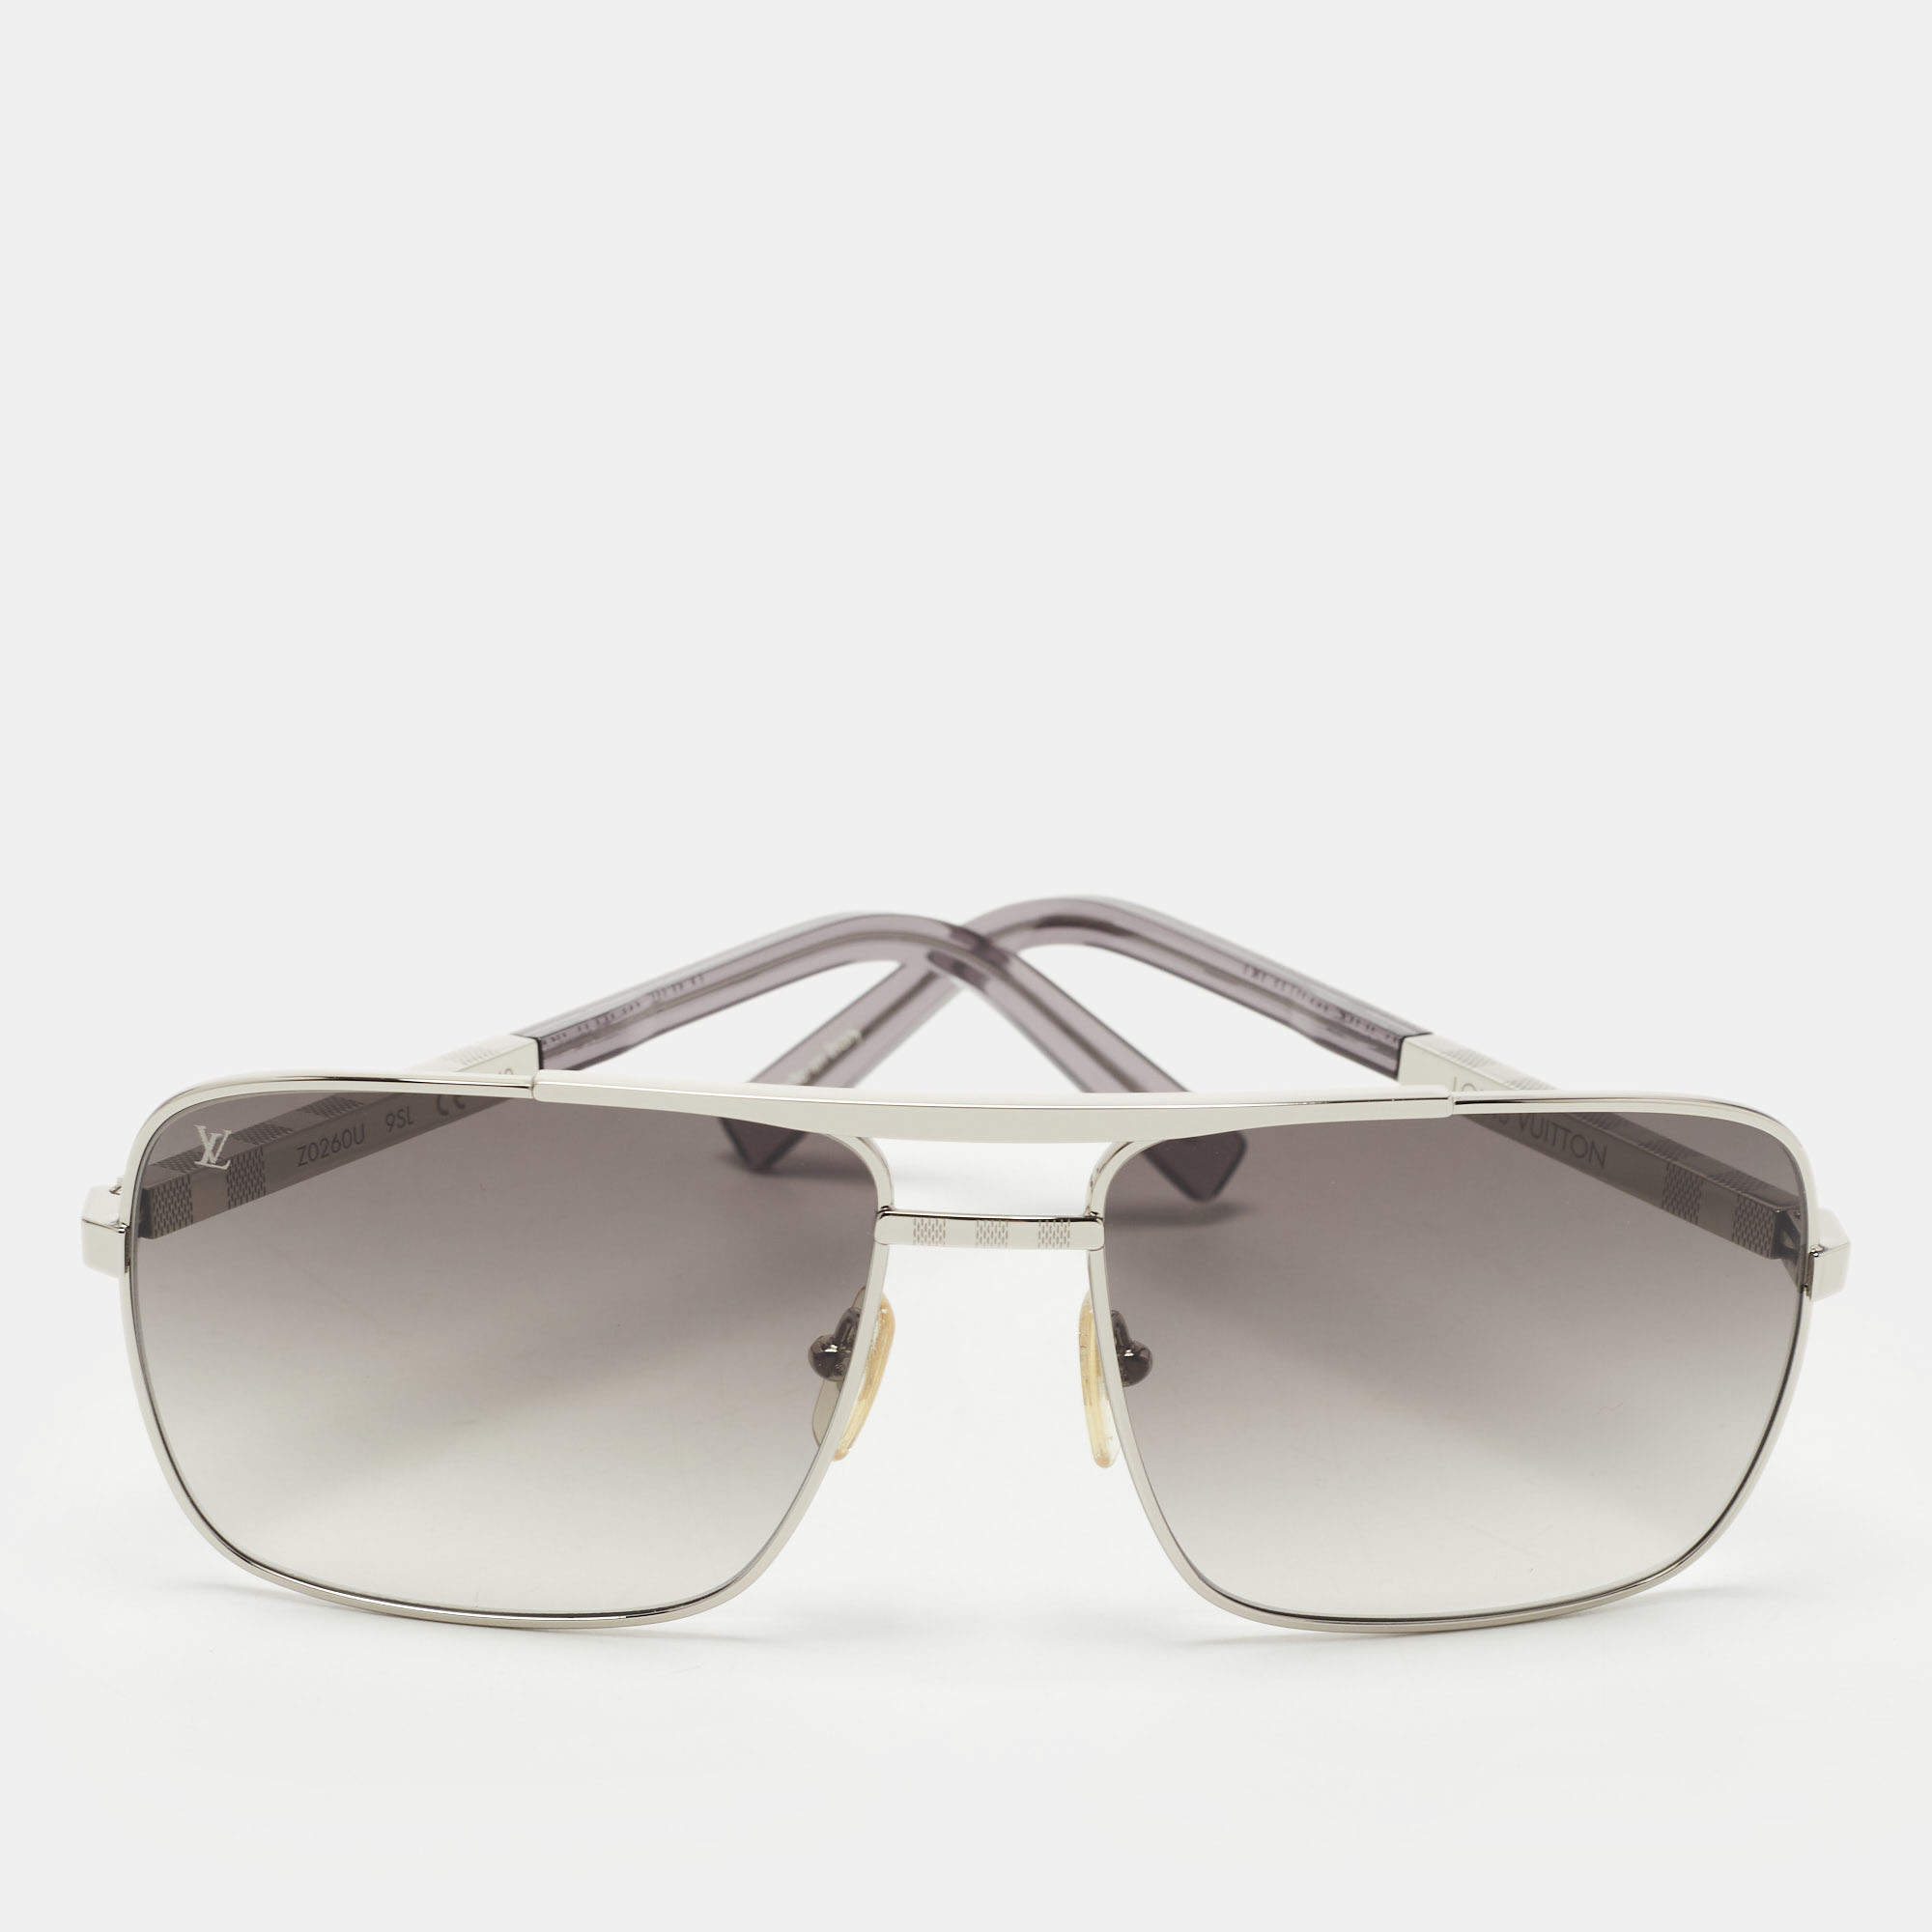 designer sunglasses for summer